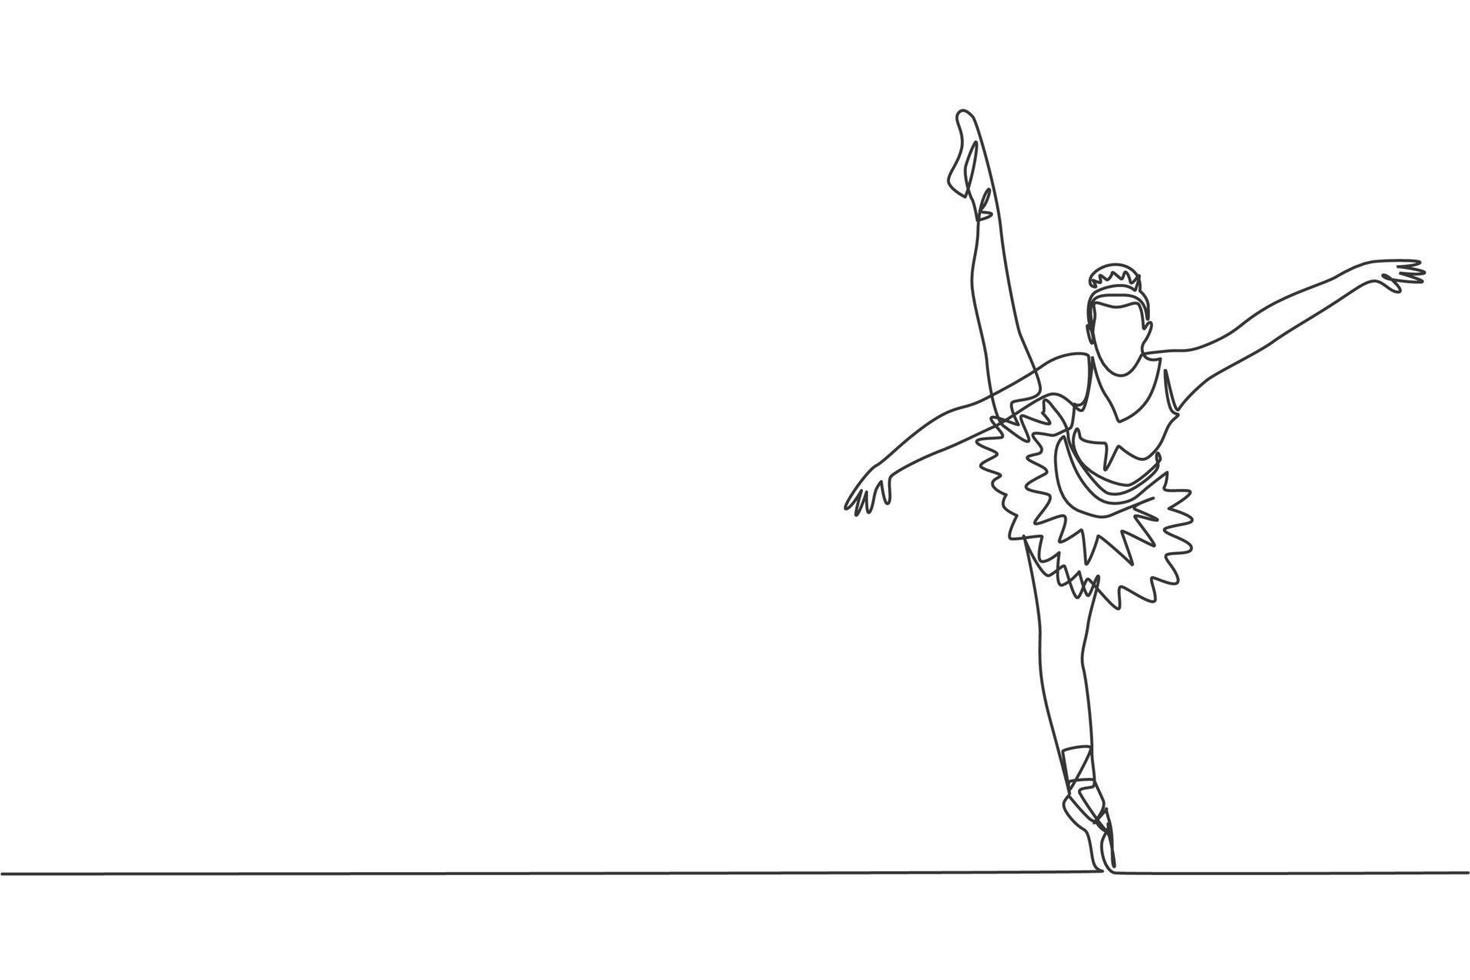 Un dibujo de una sola línea de mujer joven bailarina de belleza en tutú ejercita danza clásica de ballet en la ilustración de vector gráfico de clase de ballet. concepto de movimiento coreográfico. diseño moderno de dibujo de línea continua